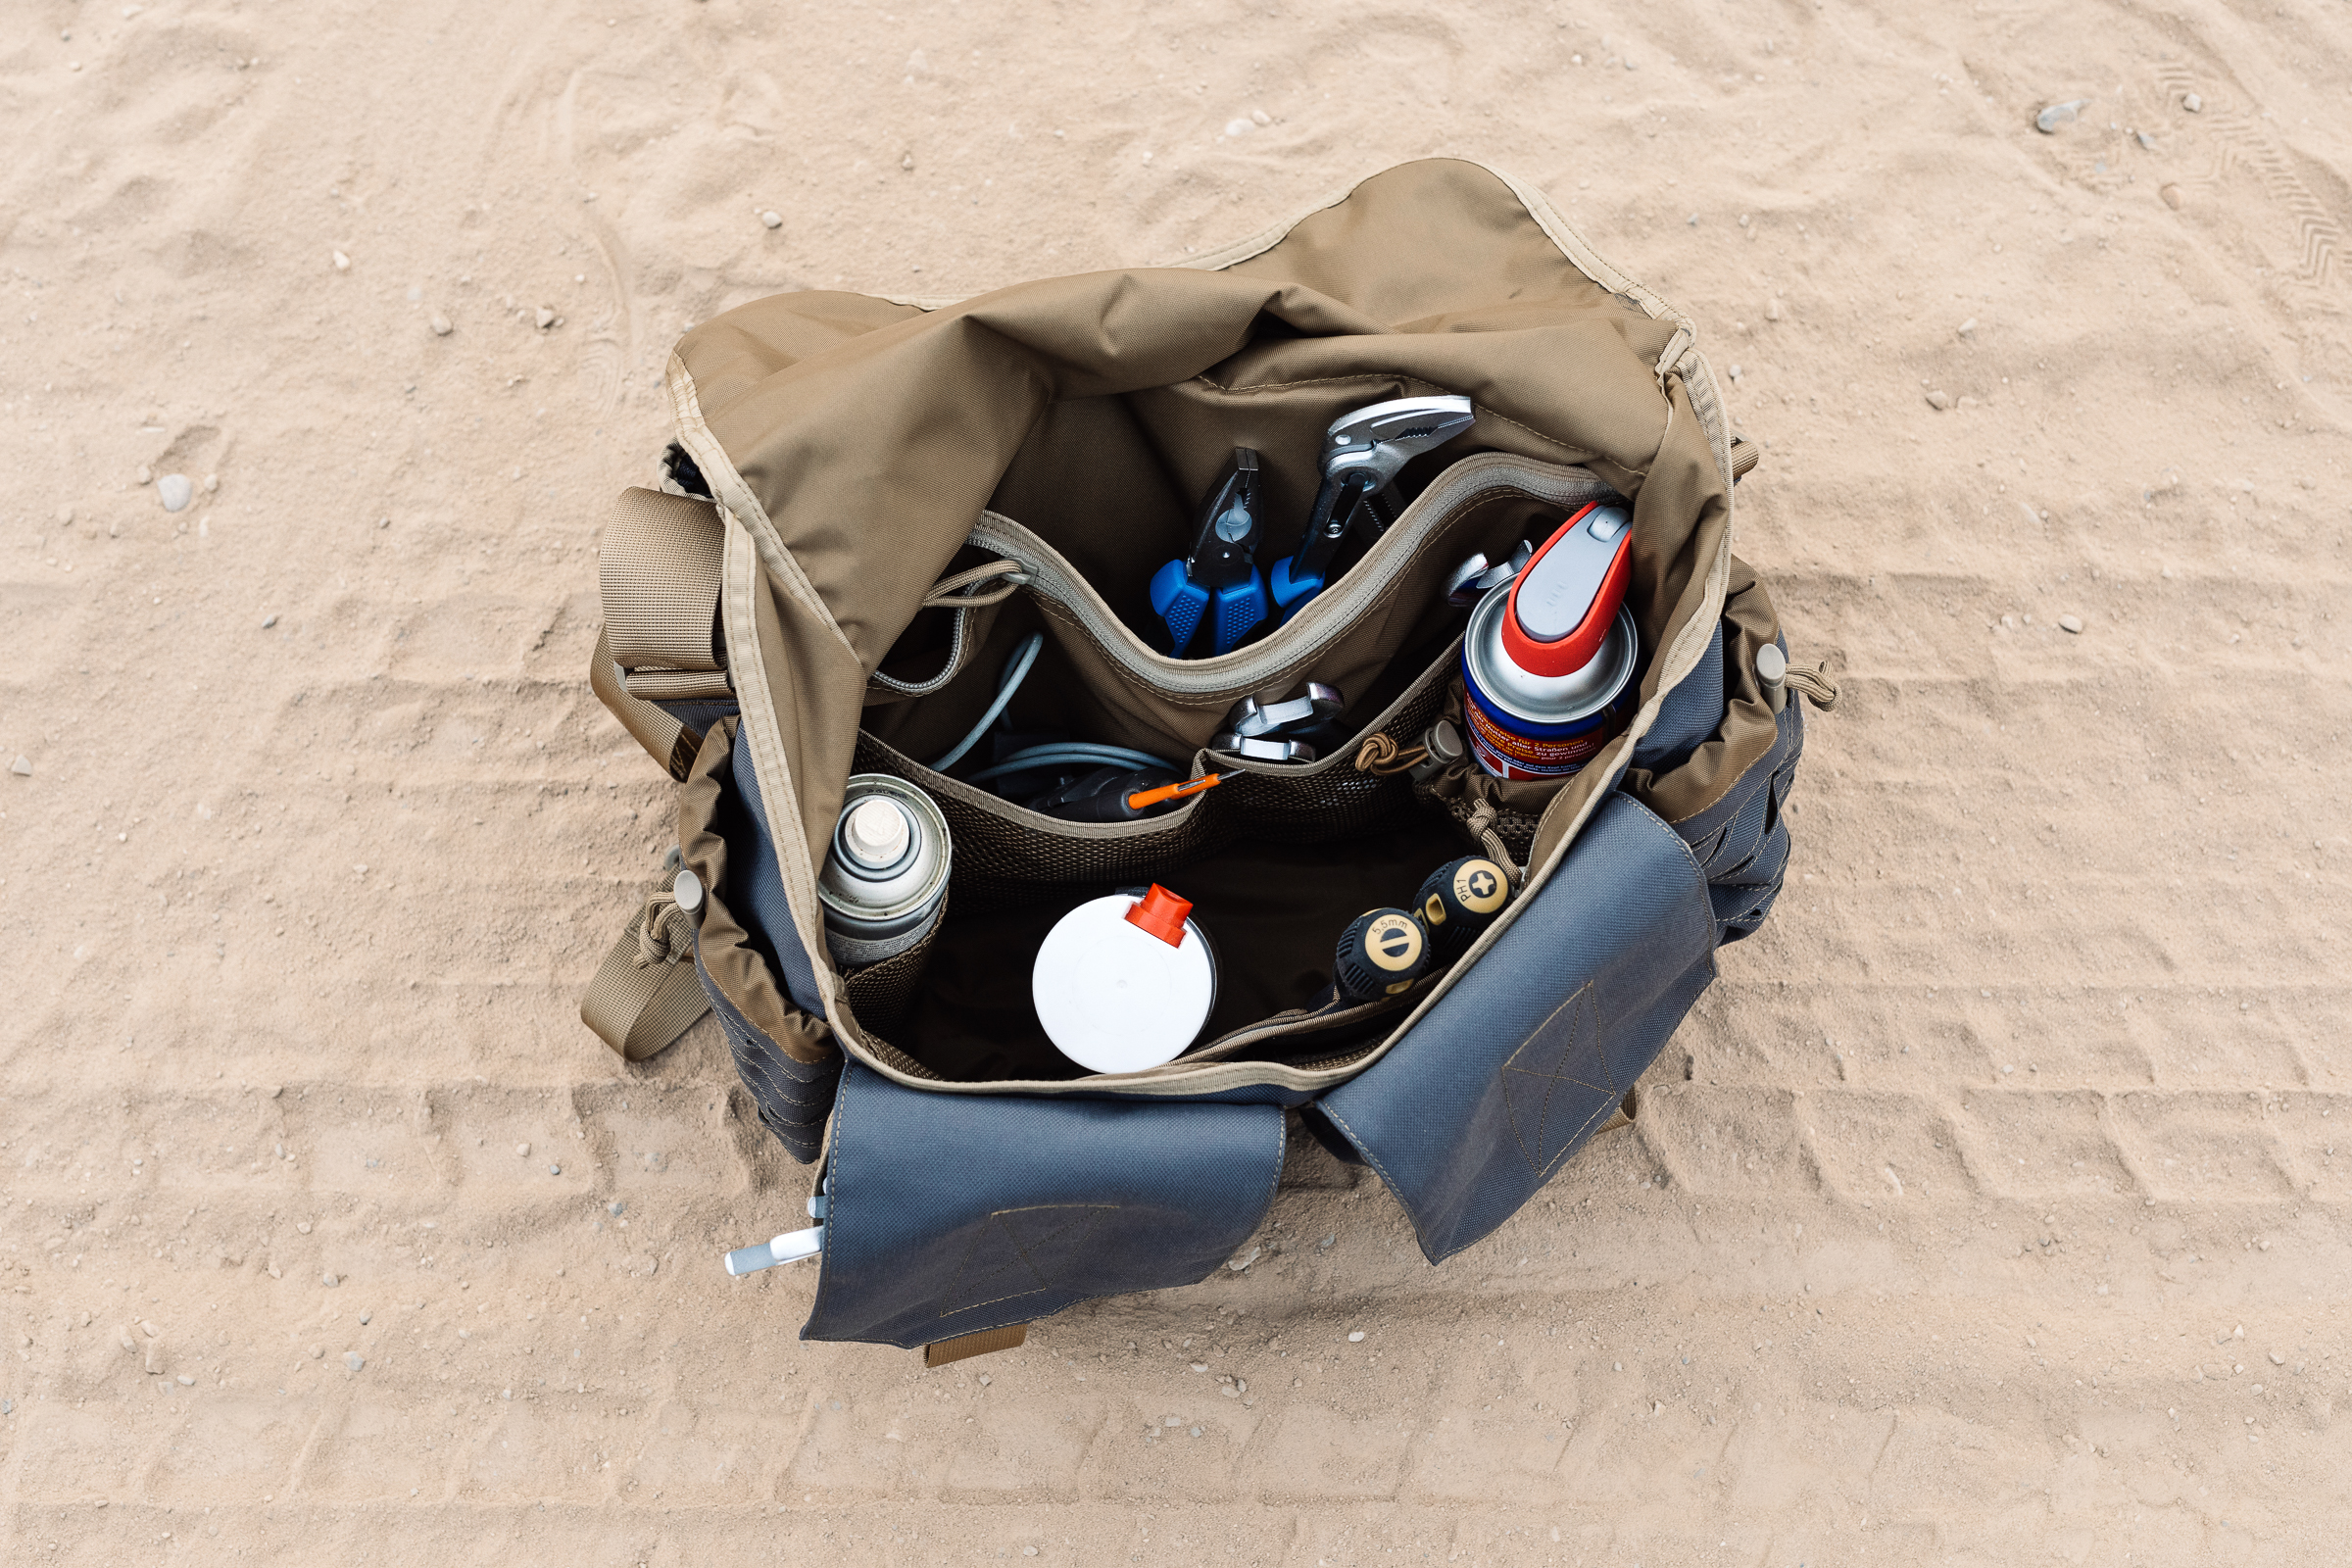 Werkzeugtaschen für Offroader - Nakatanenga Tactical Messenger Bag 2. Generation